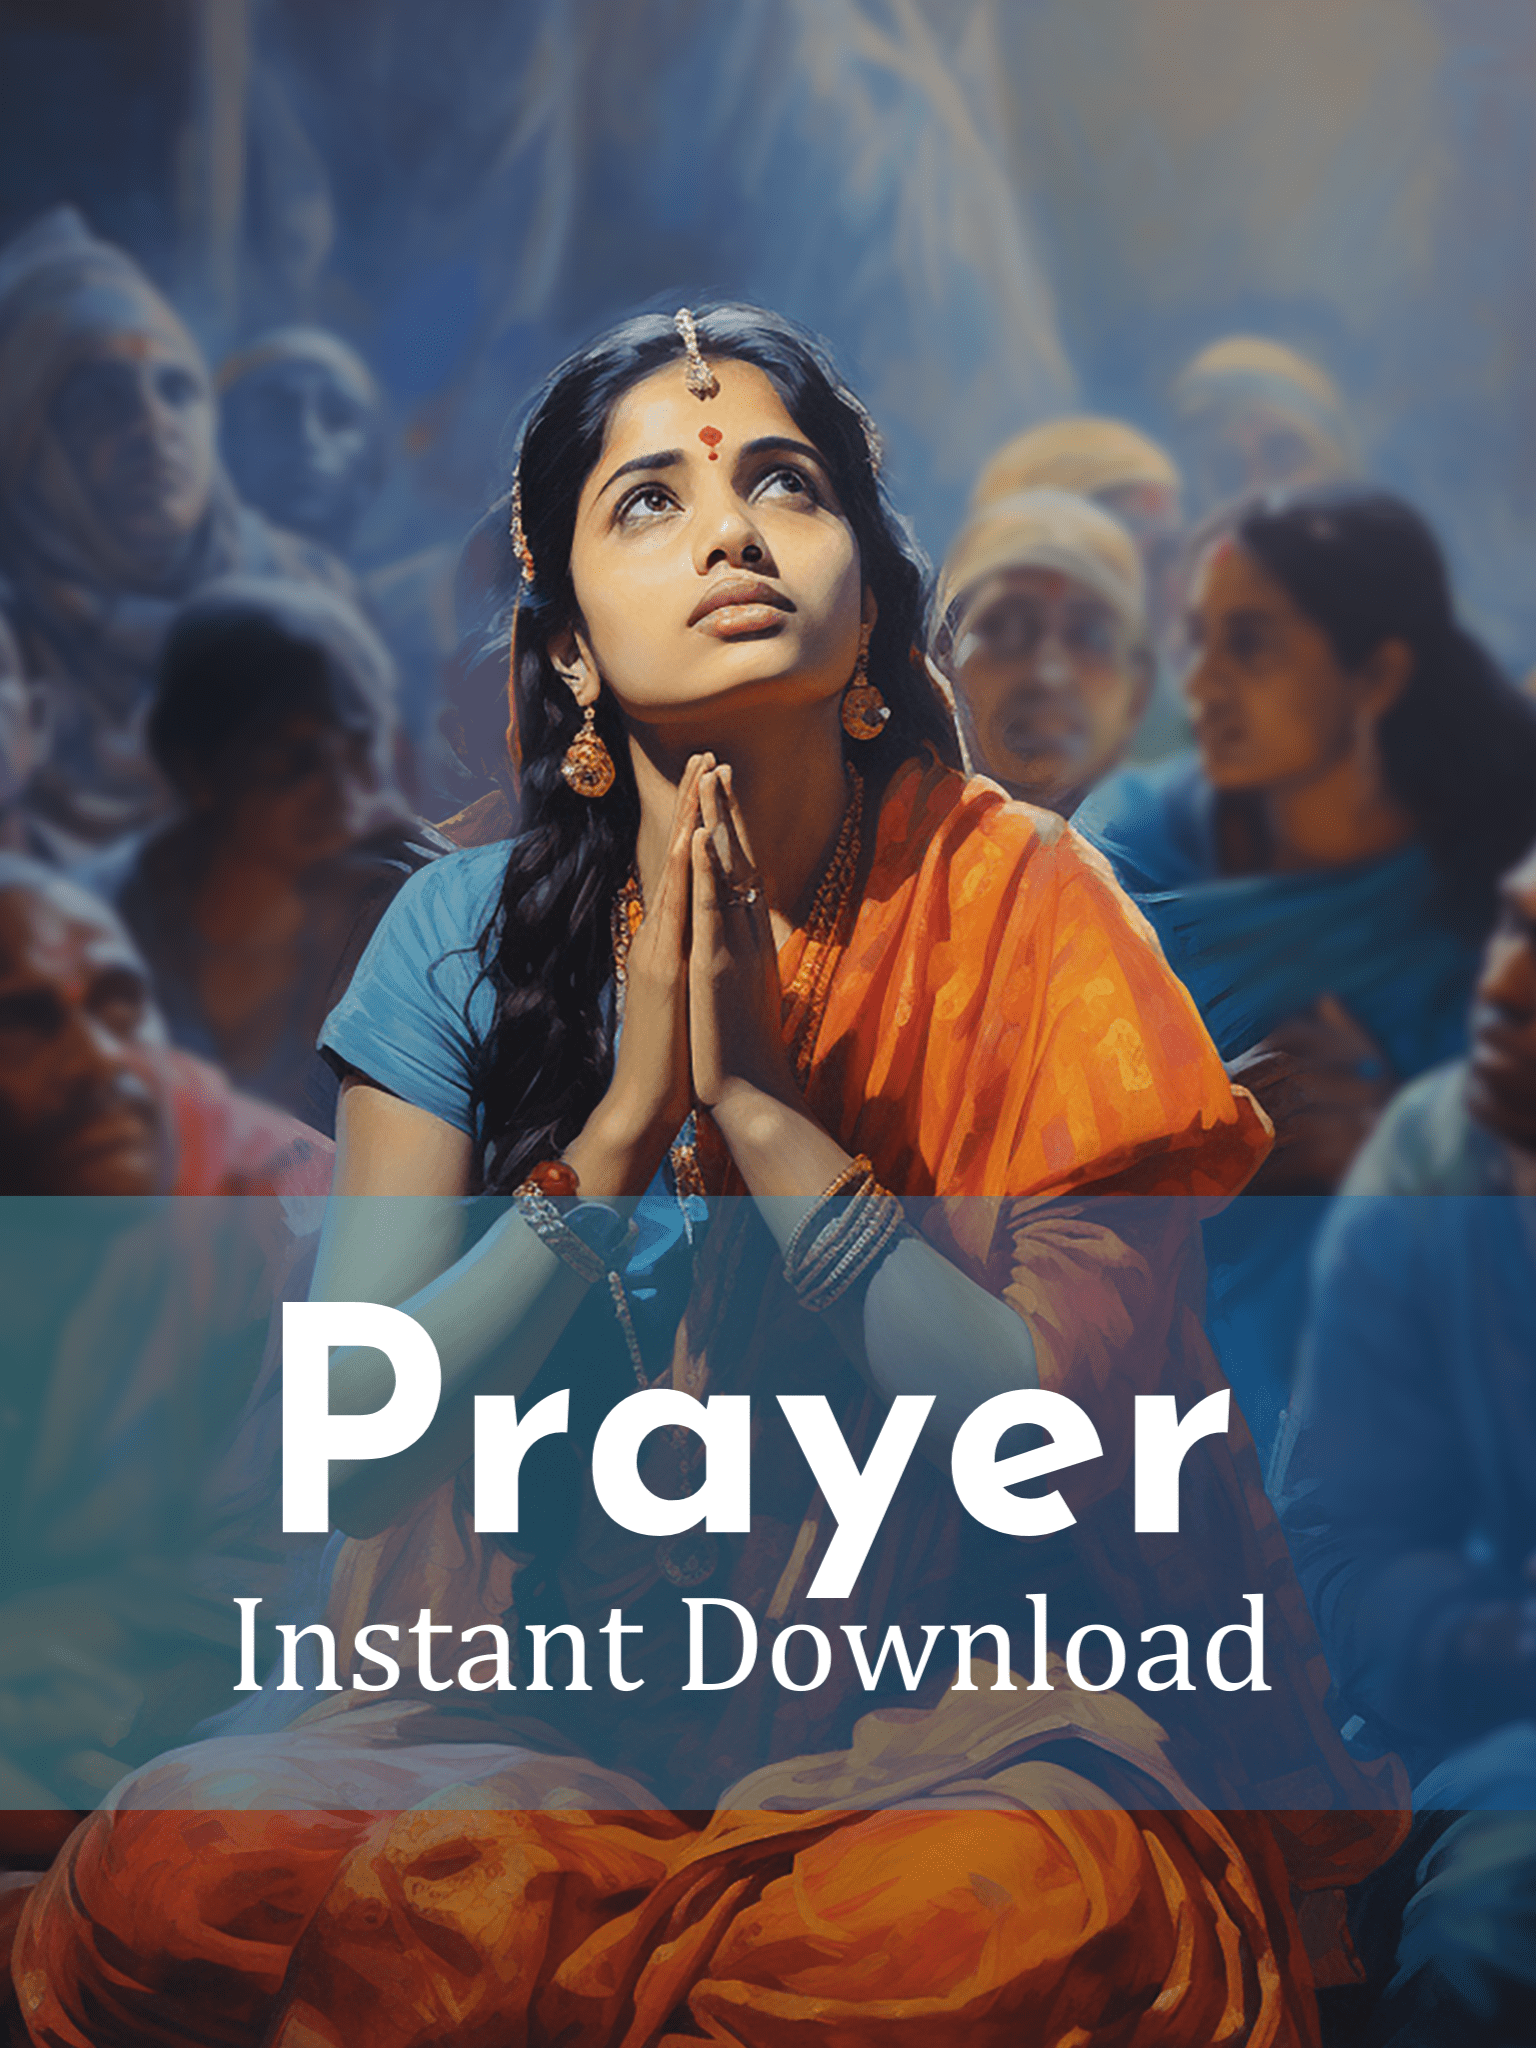 Prayer- Digital Illustration